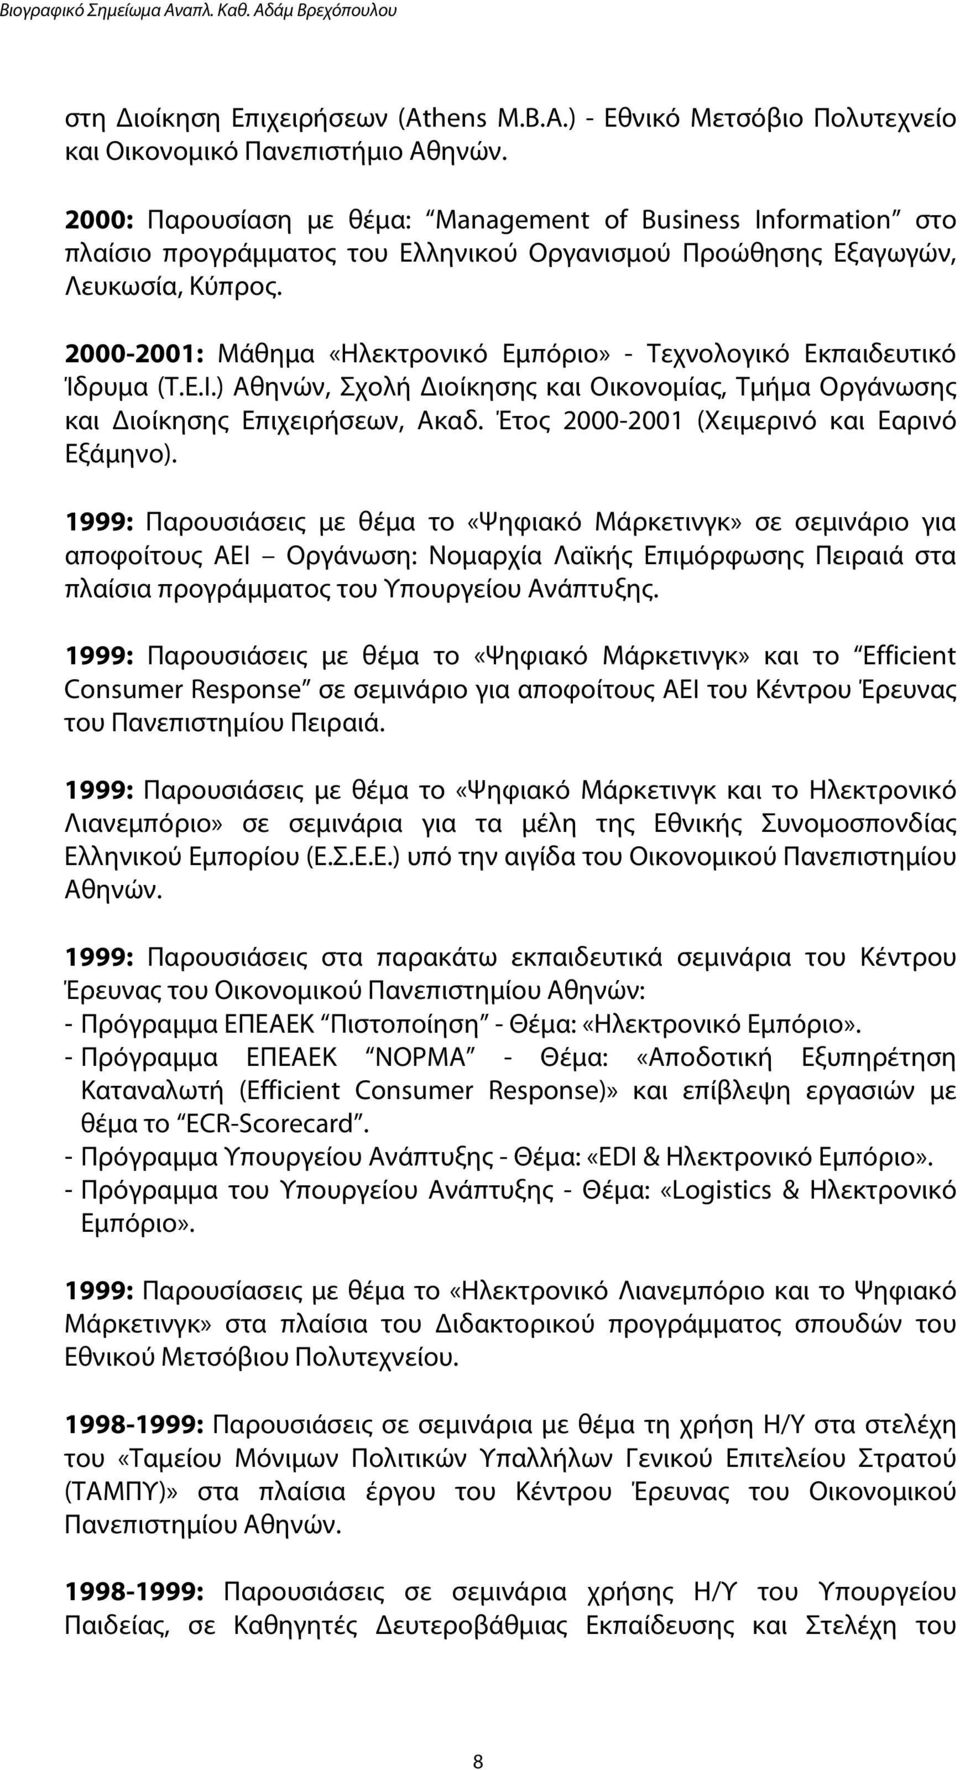 2000-2001: Μάθημα «Ηλεκτρονικό Εμπόριo» - Τεχνολογικό Εκπαιδευτικό Ίδρυμα (Τ.Ε.Ι.) Αθηνών, Σχολή Διοίκησης και Οικονομίας, Τμήμα Οργάνωσης και Διοίκησης Επιχειρήσεων, Ακαδ.